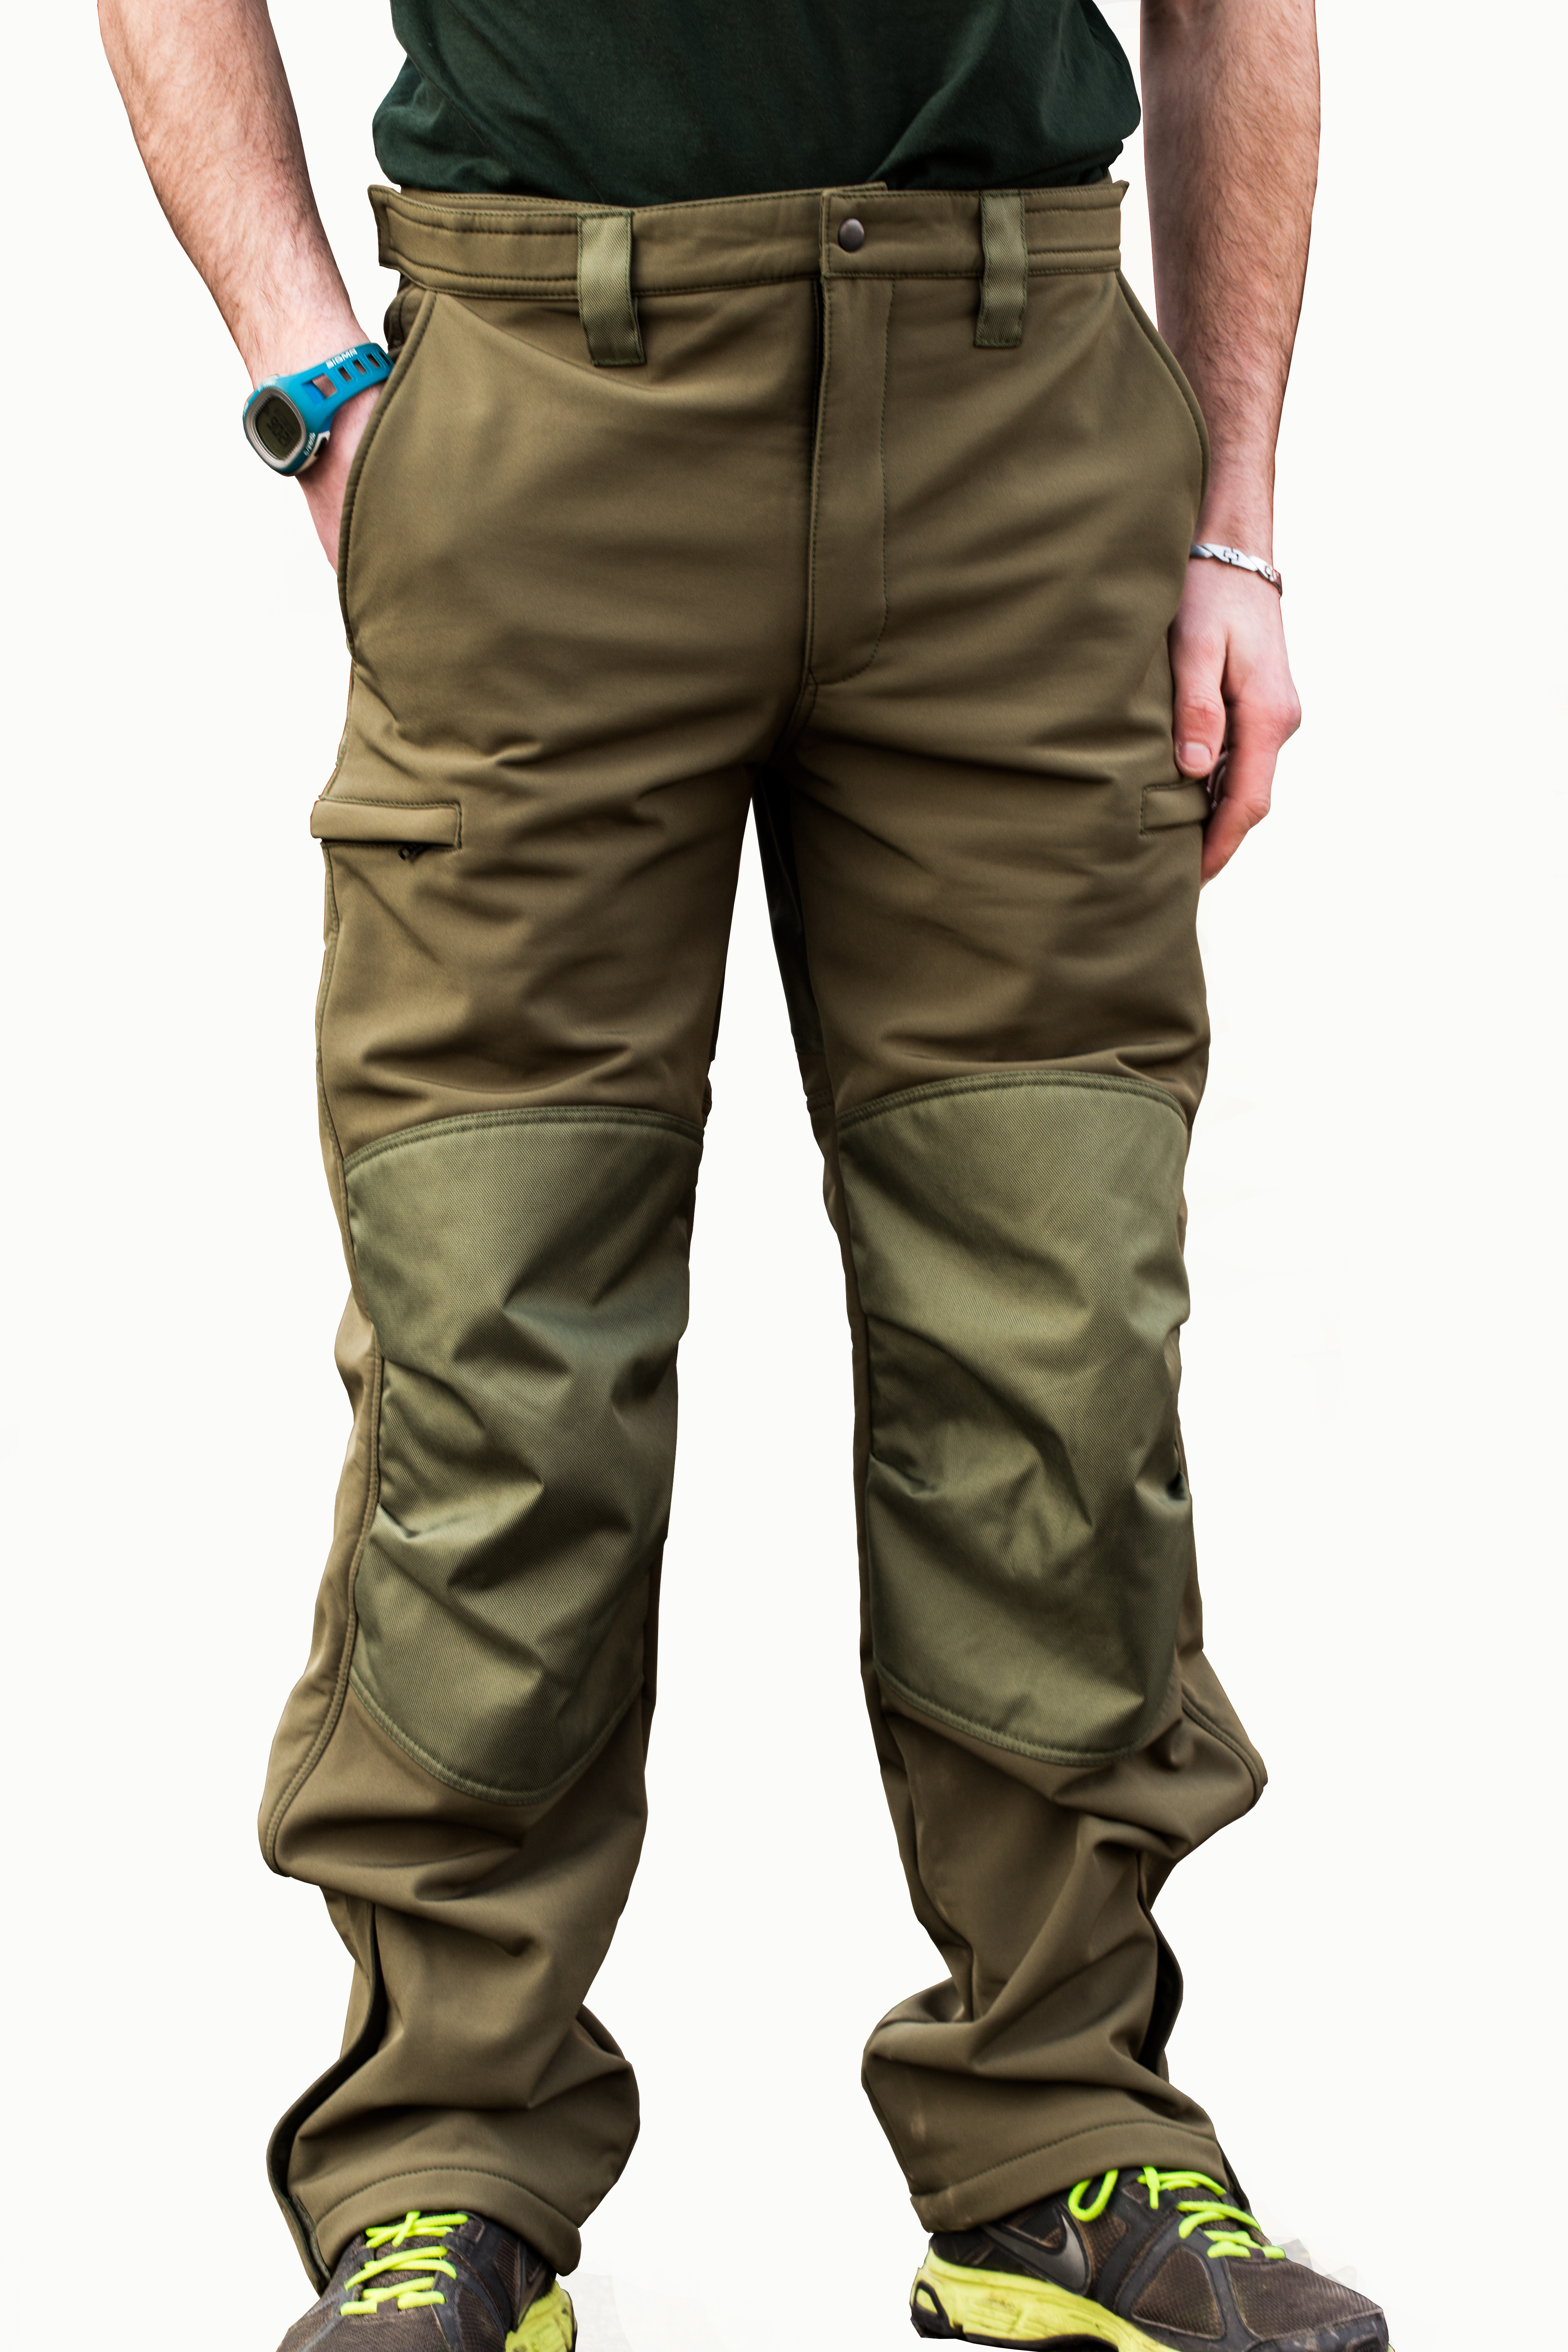 Mikbaits oblečení - Nepromokavé funkční kalhoty Mikbaits STR zelené XXL